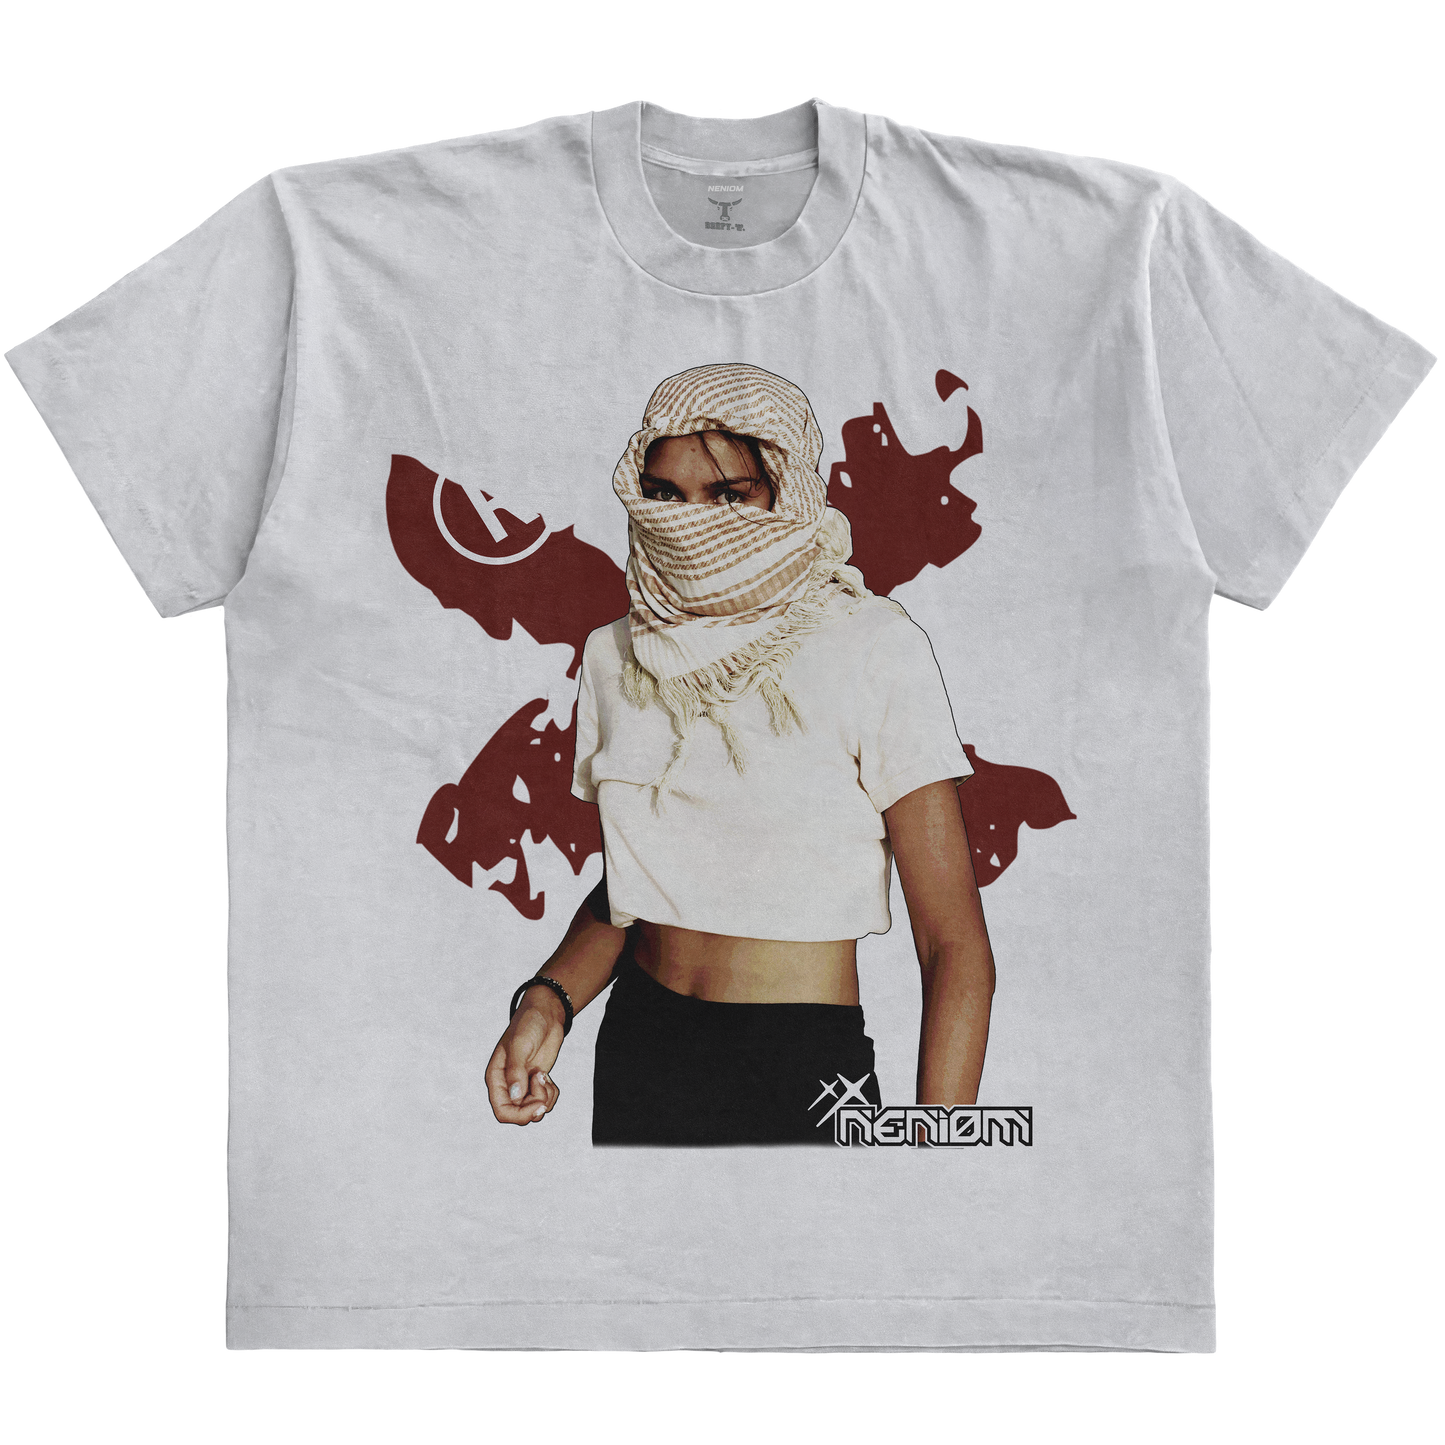 Neniom Camiseta Desert Girl ® Beefy